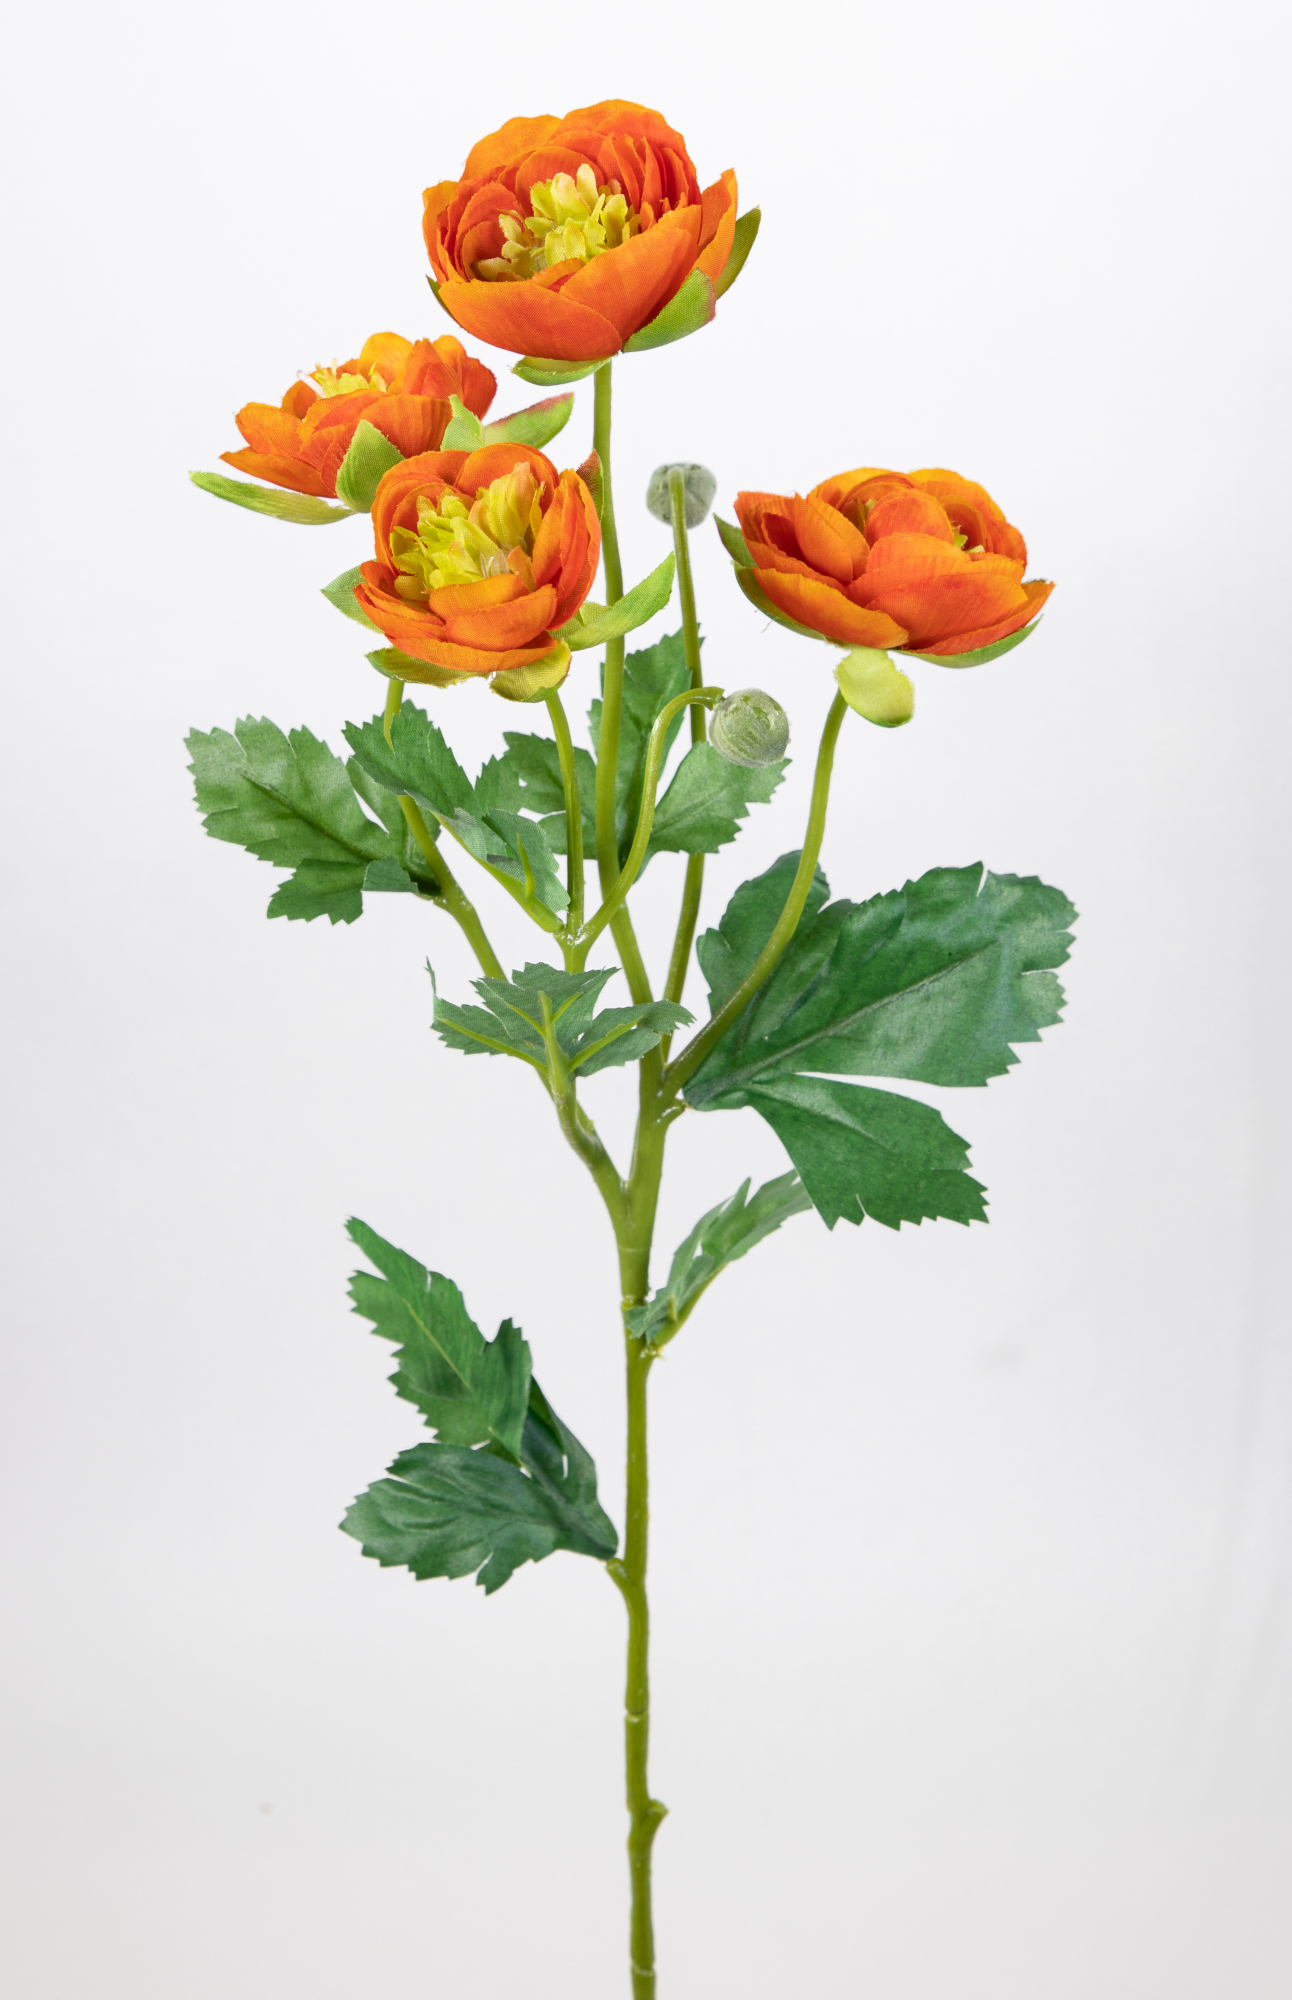 6 Stück Ranunkelzweig 60cm orange OG Kunstblumen künstliche Ranunkel Hahnenfuß Blumen Seidenblumen